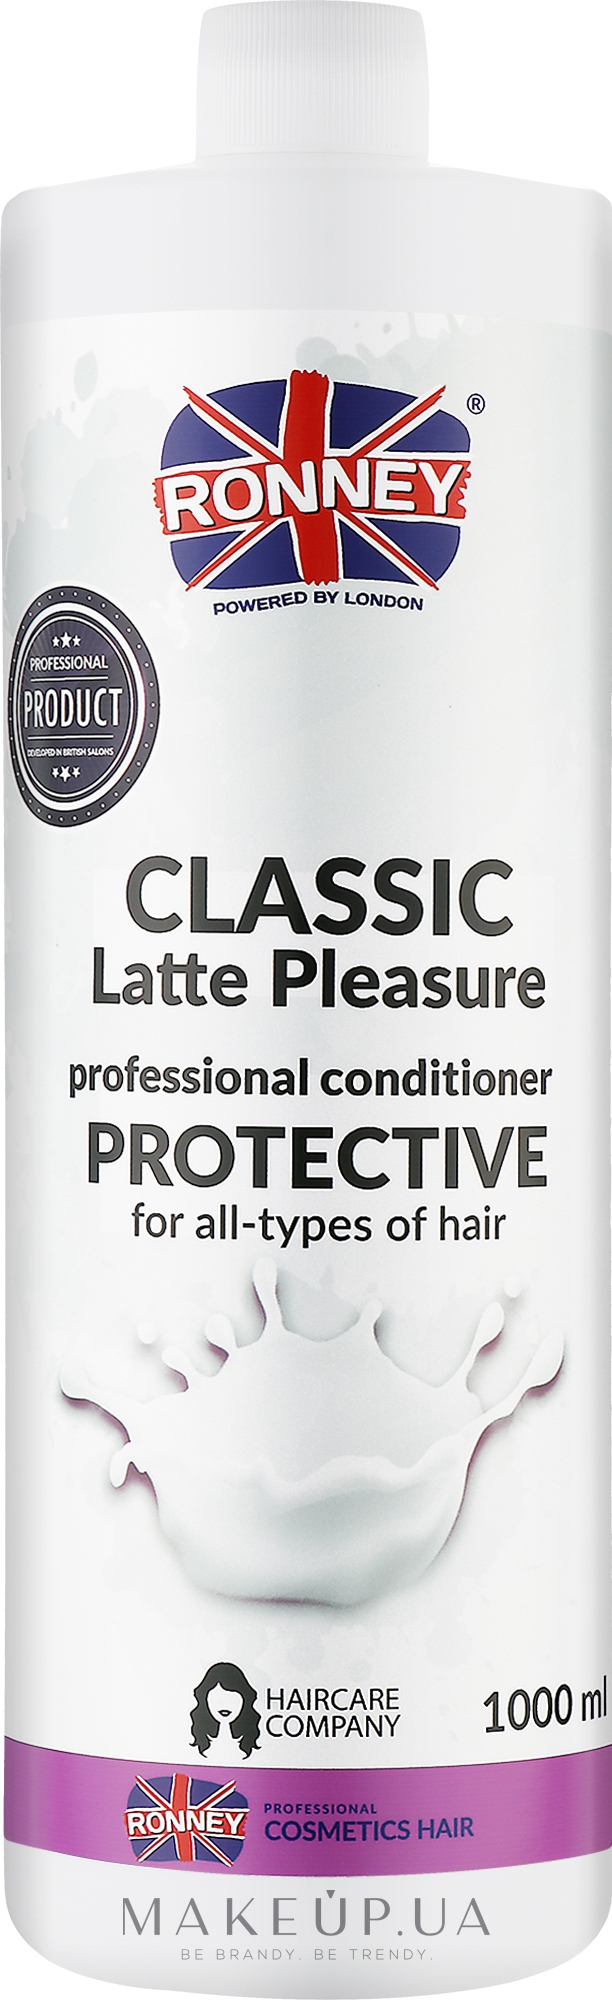 Кондиционер для волос - Ronney Professional Classic Latte Pleasure Protective Conditioner — фото 1000ml